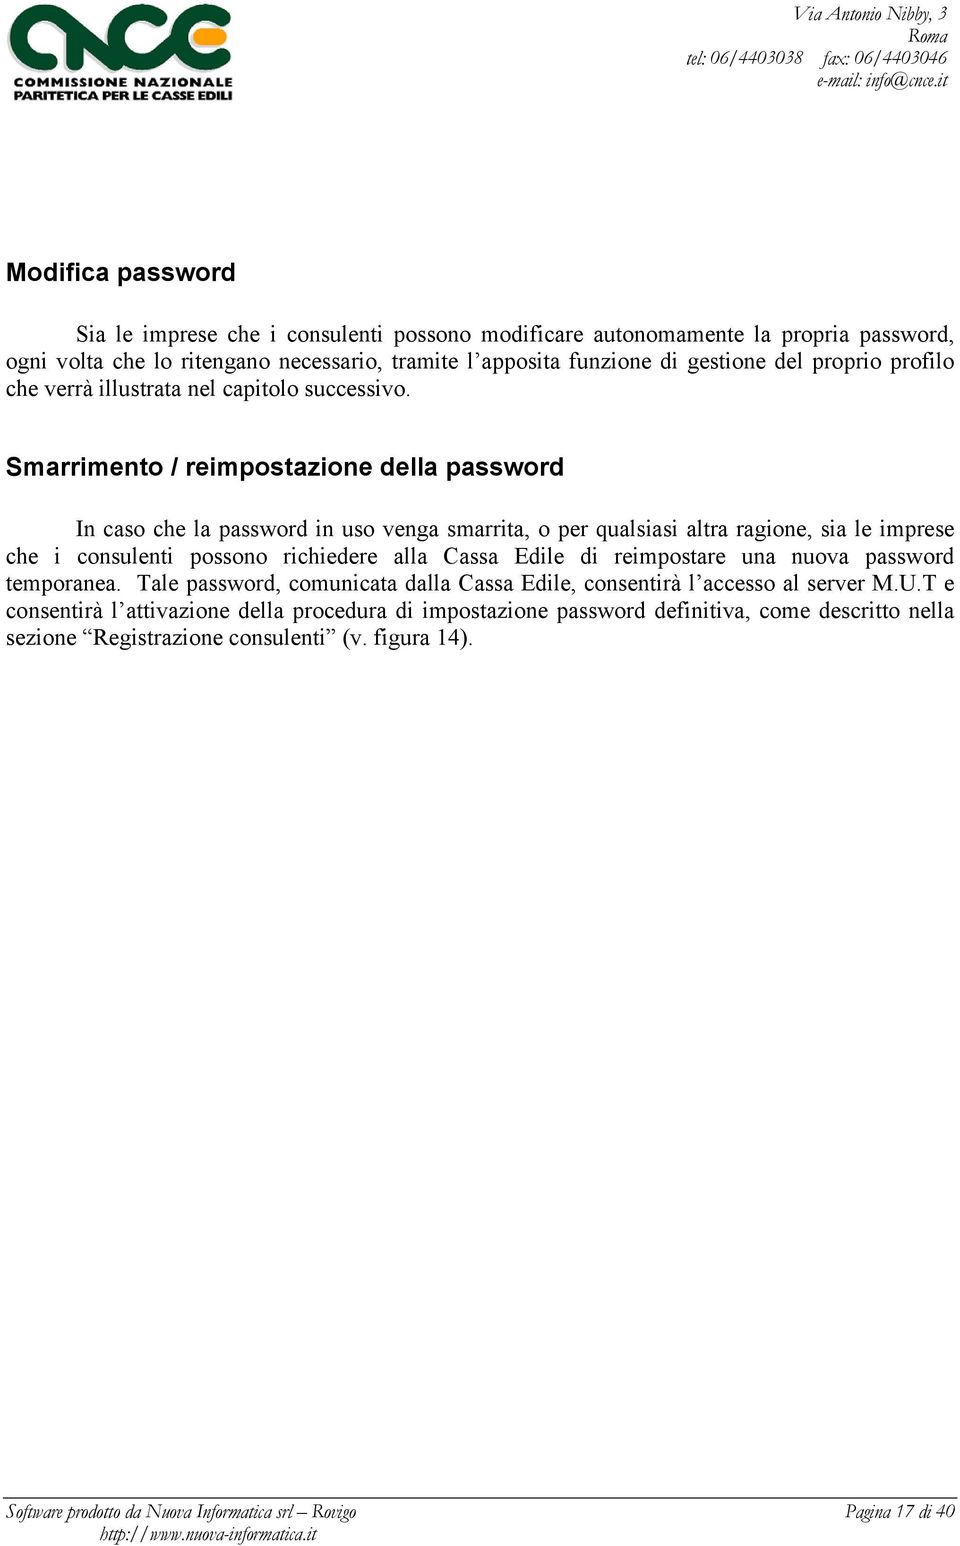 Smarrimento / reimpostazione della password In caso che la password in uso venga smarrita, o per qualsiasi altra ragione, sia le imprese che i consulenti possono richiedere alla Cassa Edile di